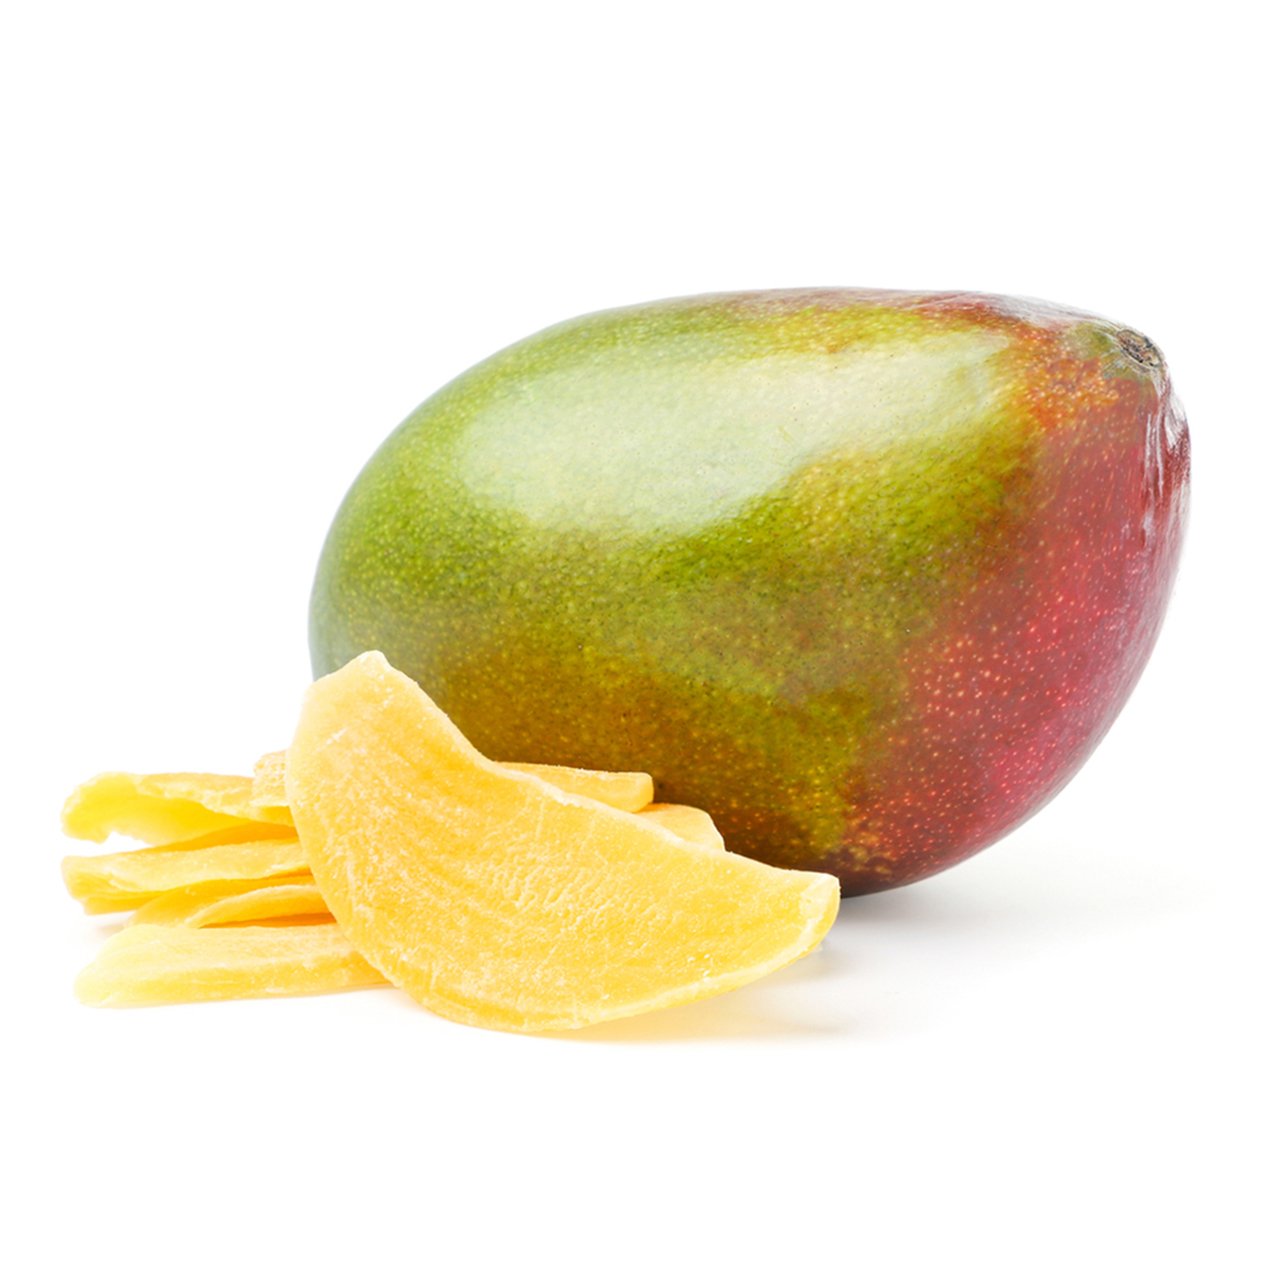 Mango Cipsi - Meyve Cipsi - Meyve Cipsleri - Kuru Meyve Cipsi